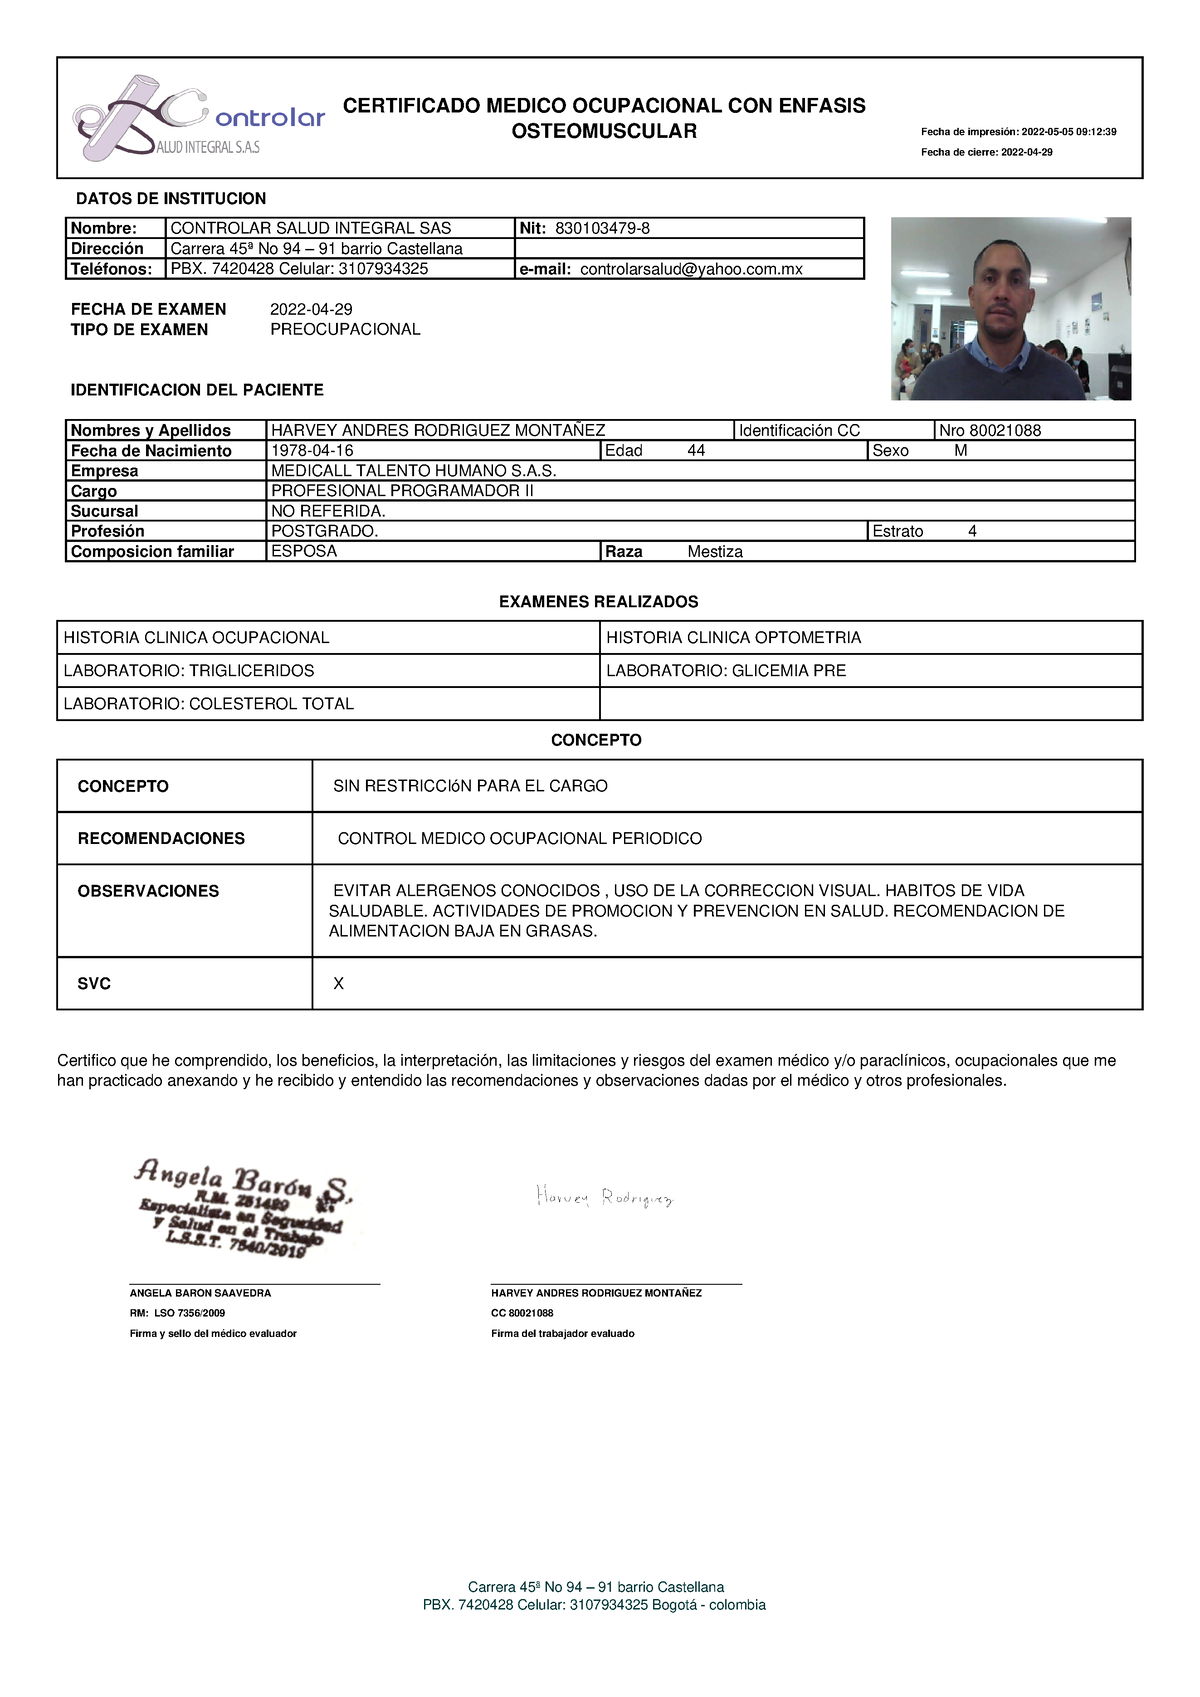 Informe Medico Ocupacional Pdf Derecho Laboral Medici 9639